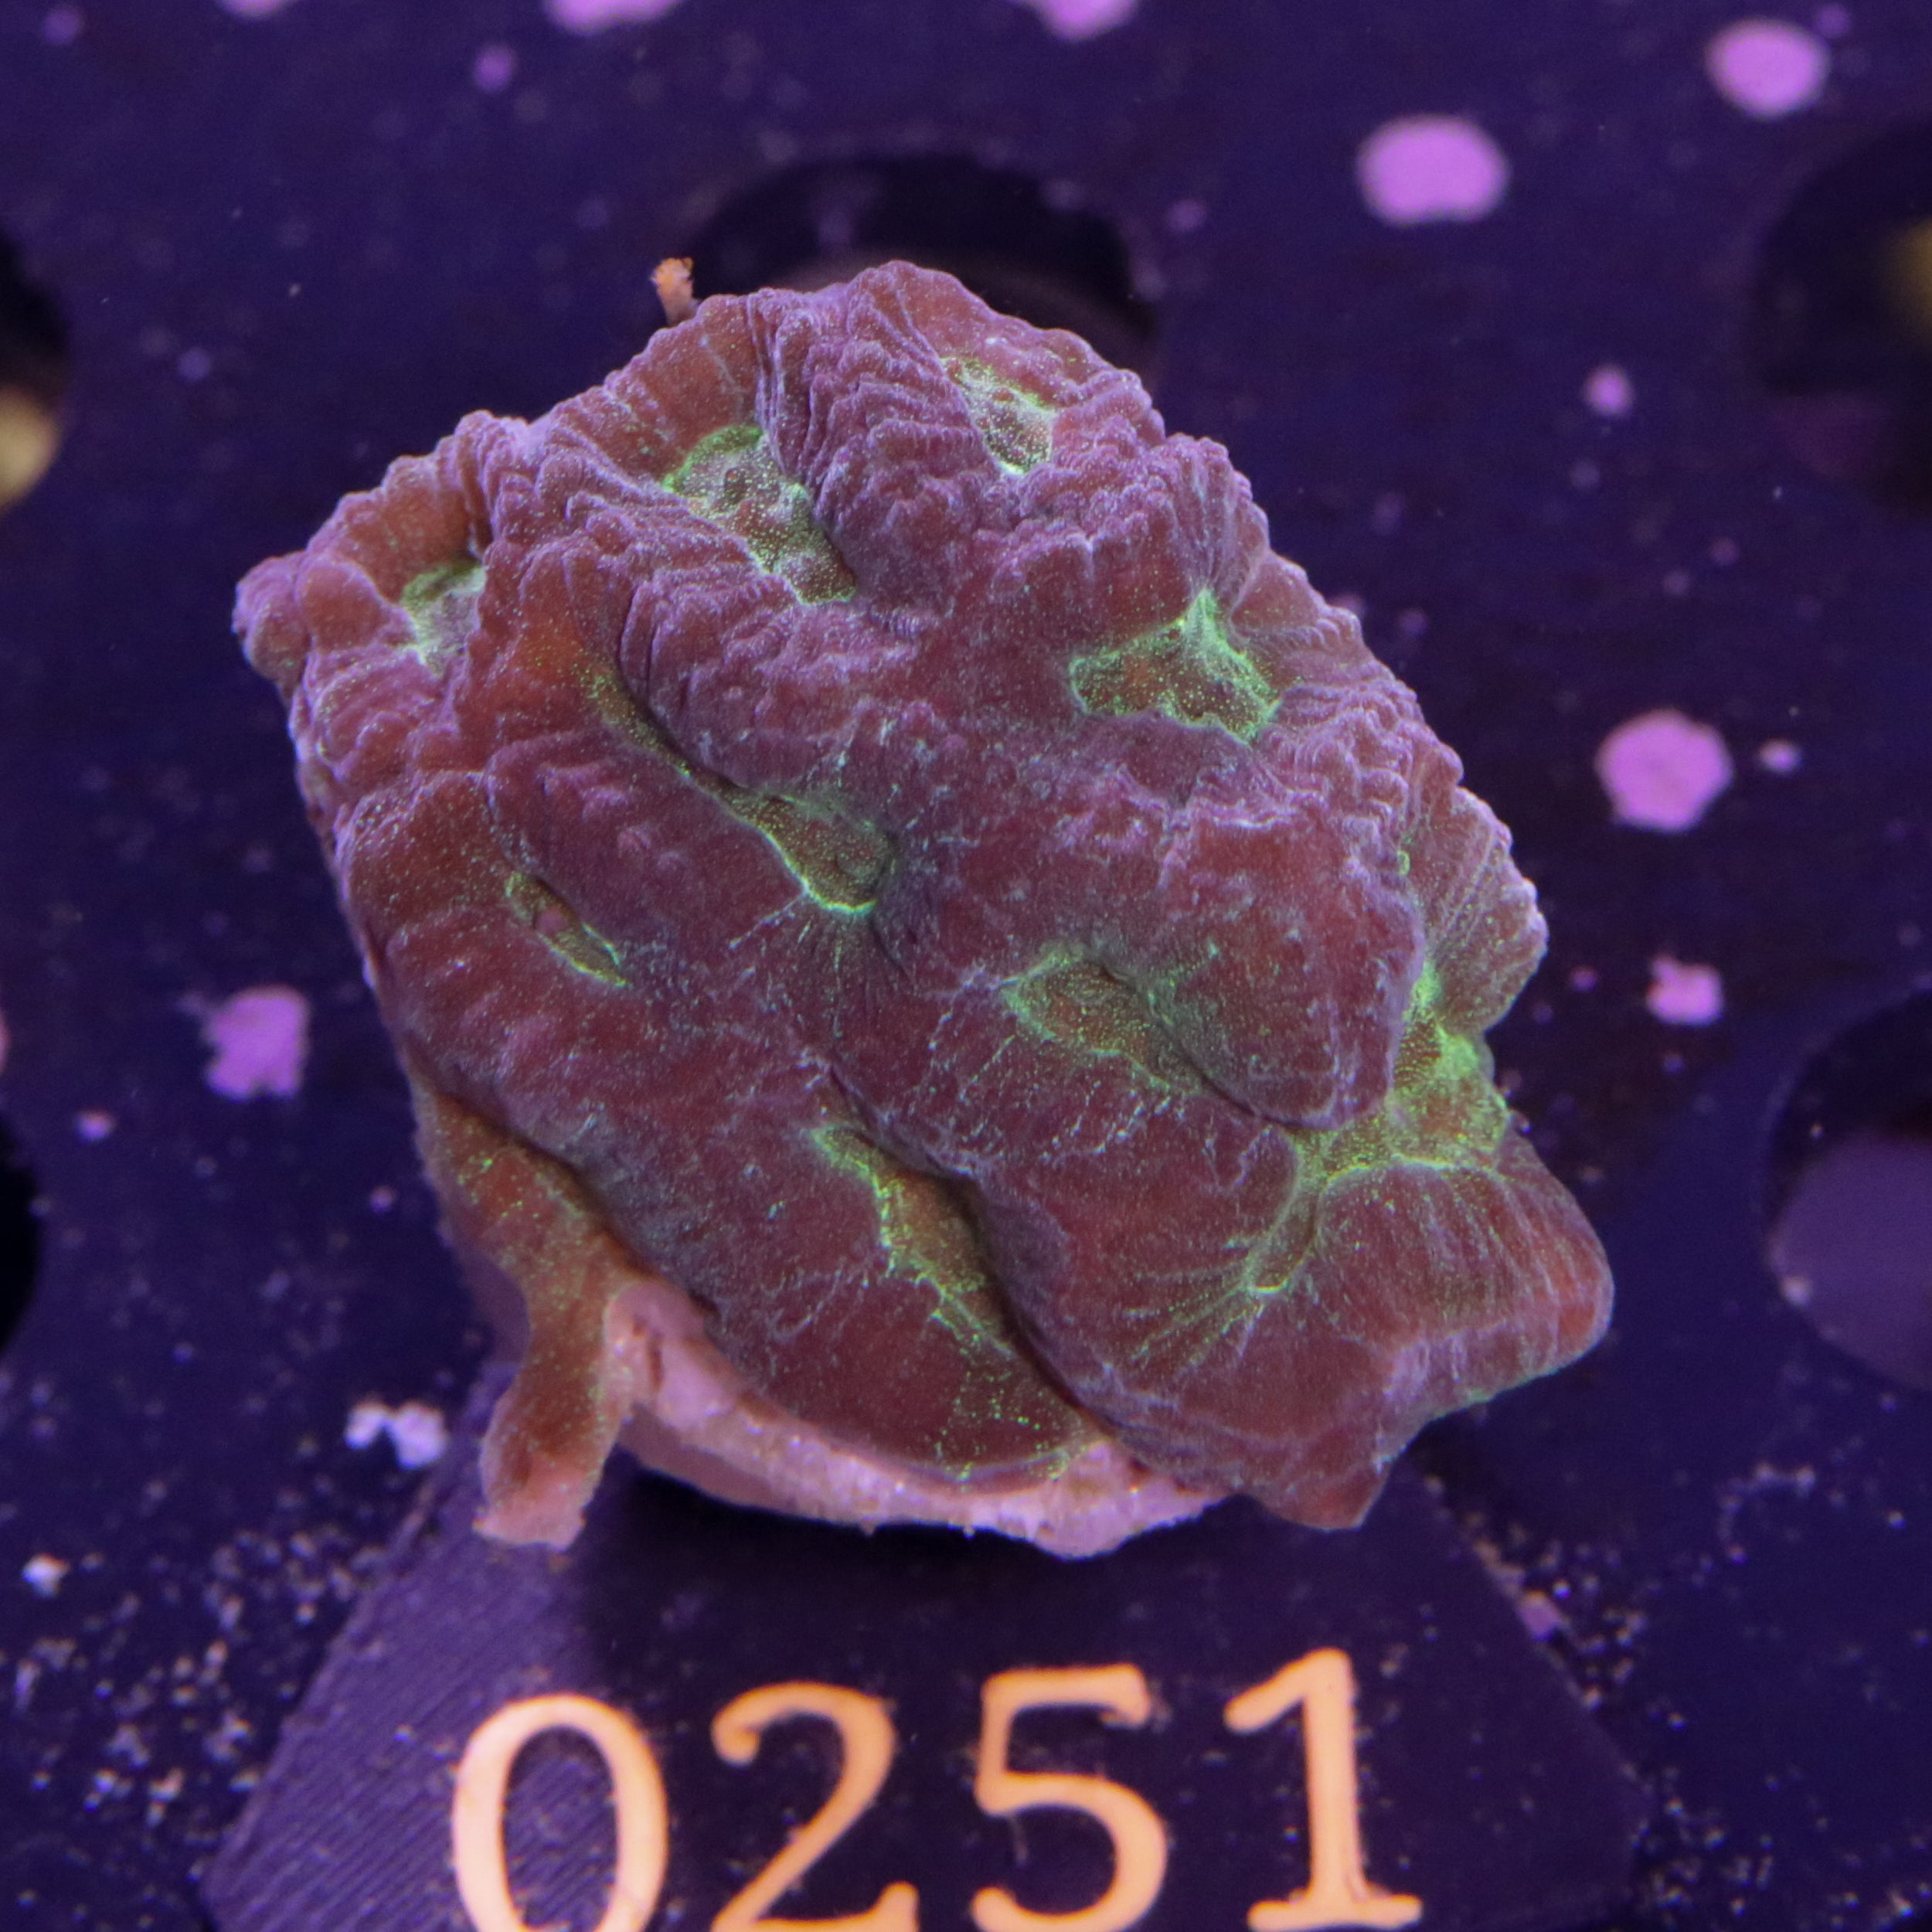 Corals4U